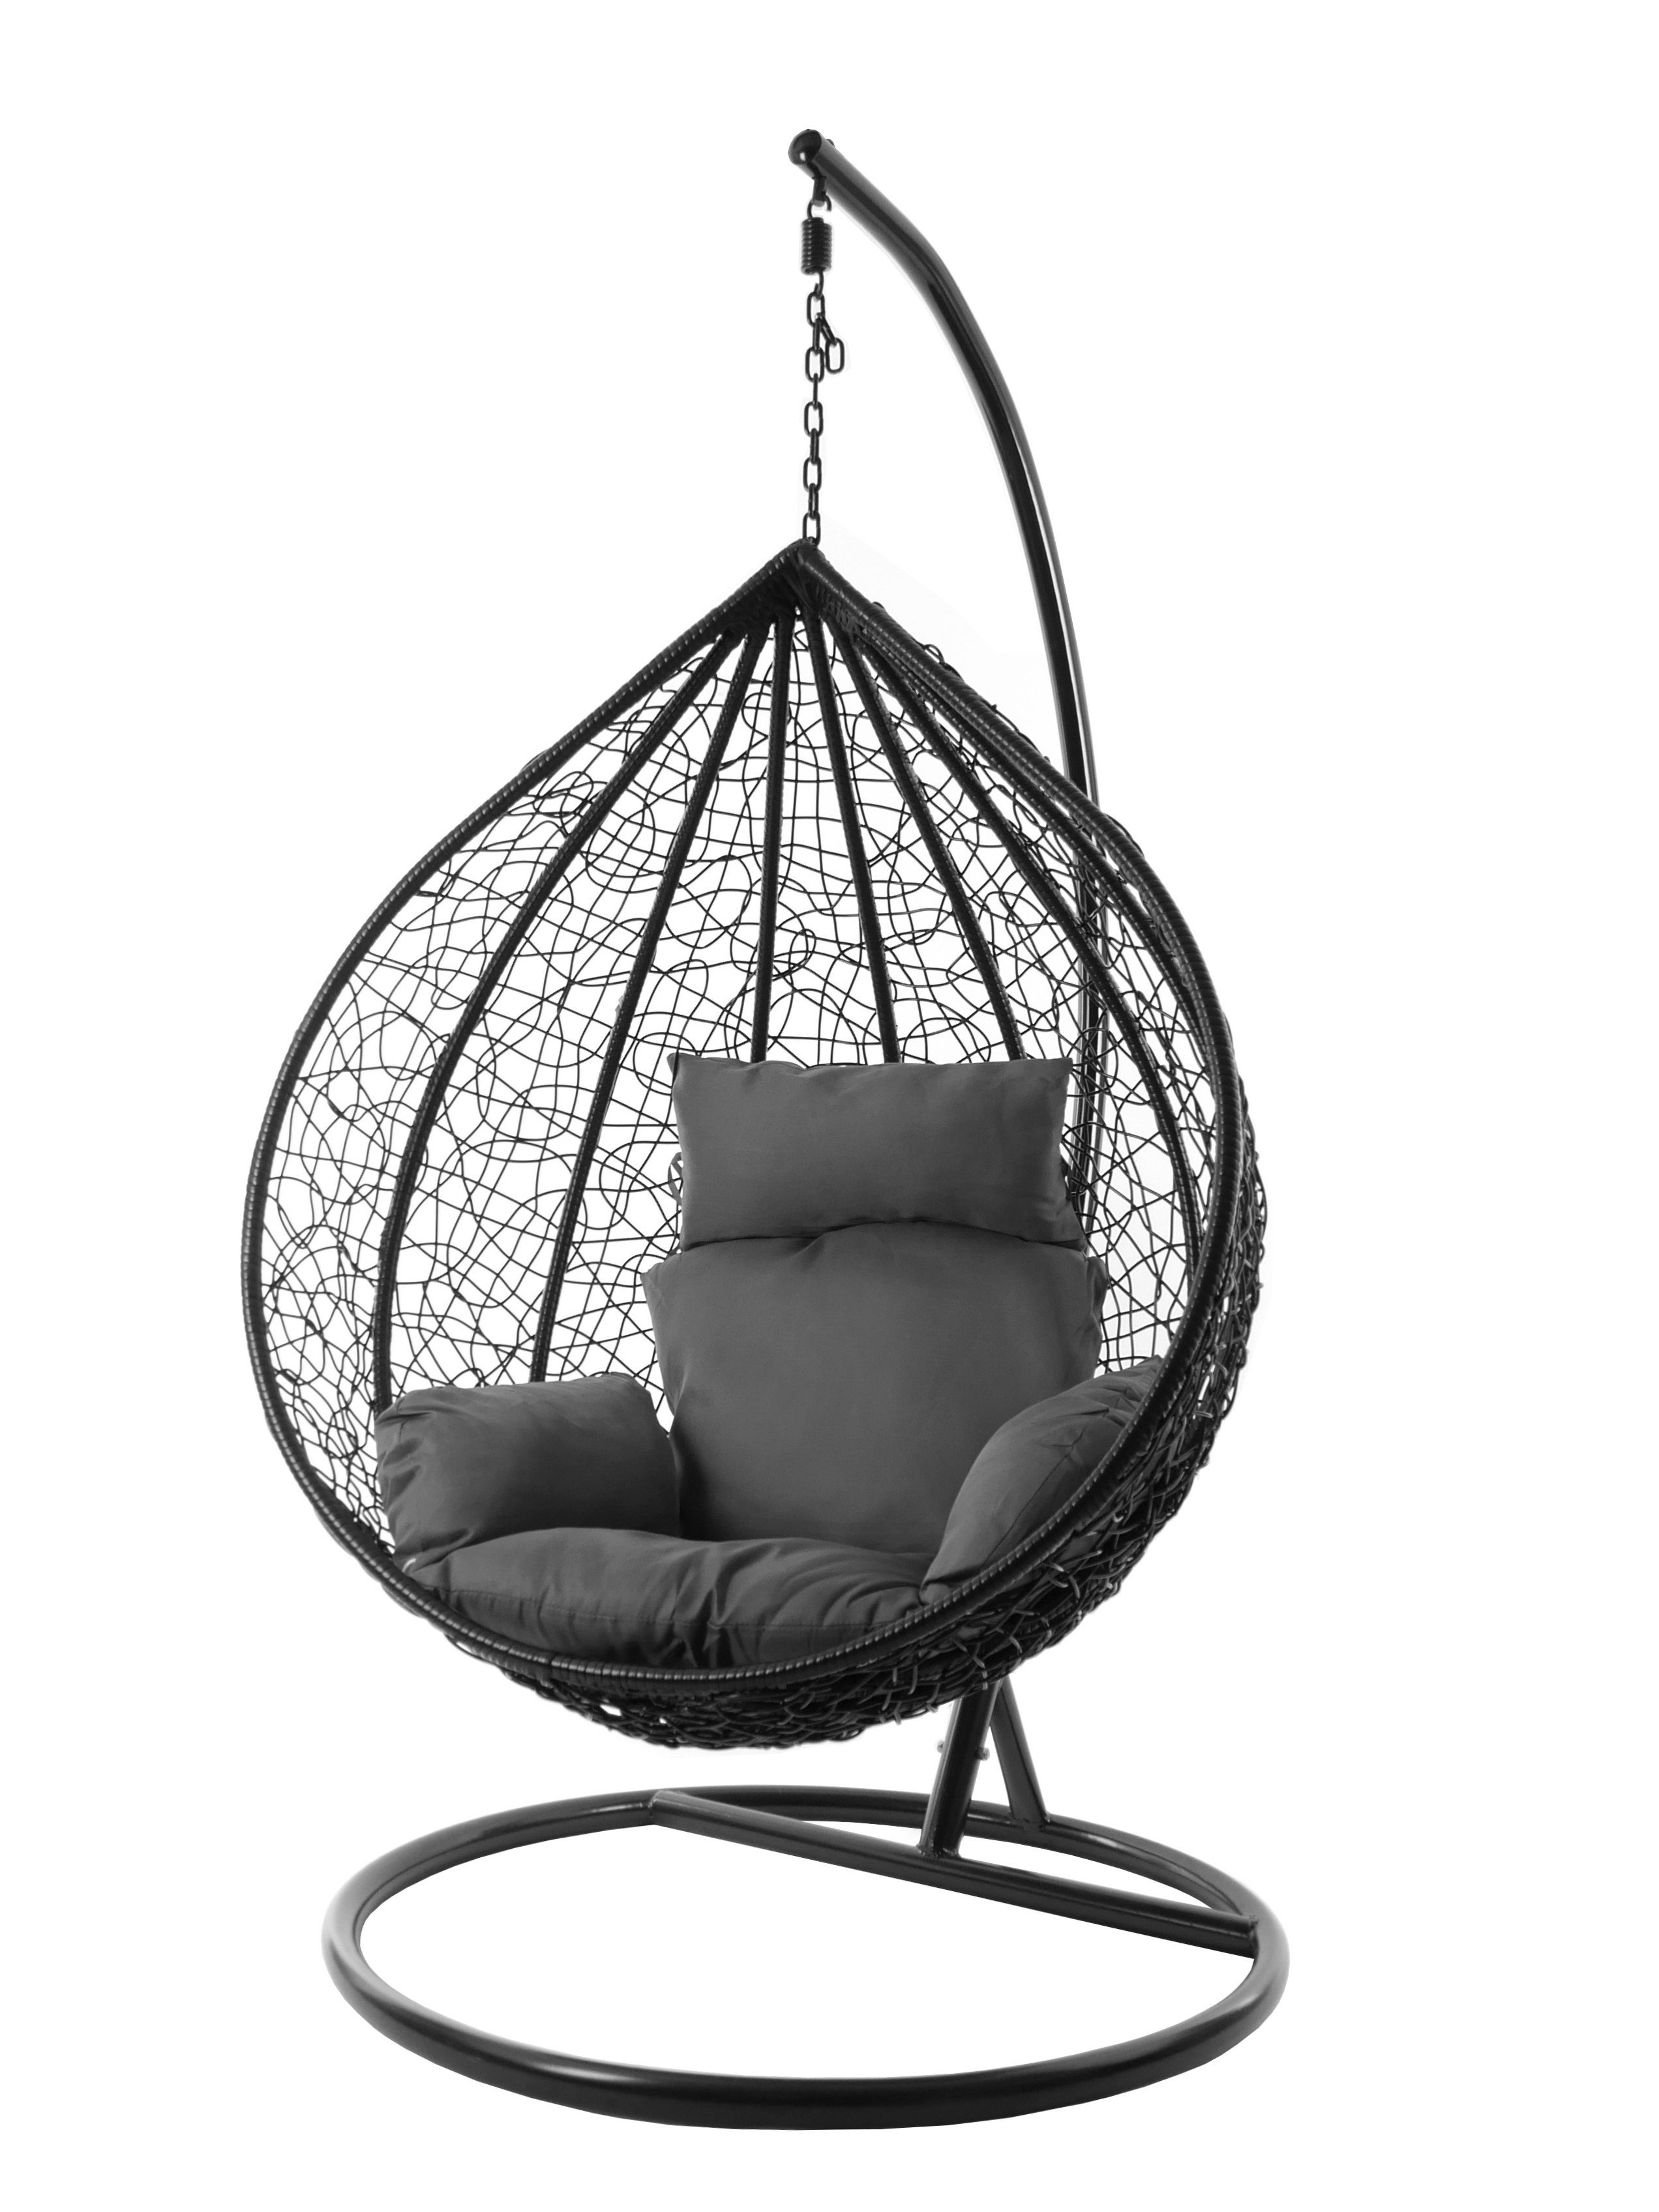 KIDEO Swing Chair, dunkelgrau Kissen shadow) schwarz, edel, Hängesessel Gestell Hängesessel MANACOR XXL und inklusive, Nest-Kissen, (8999 Farben verschiedene